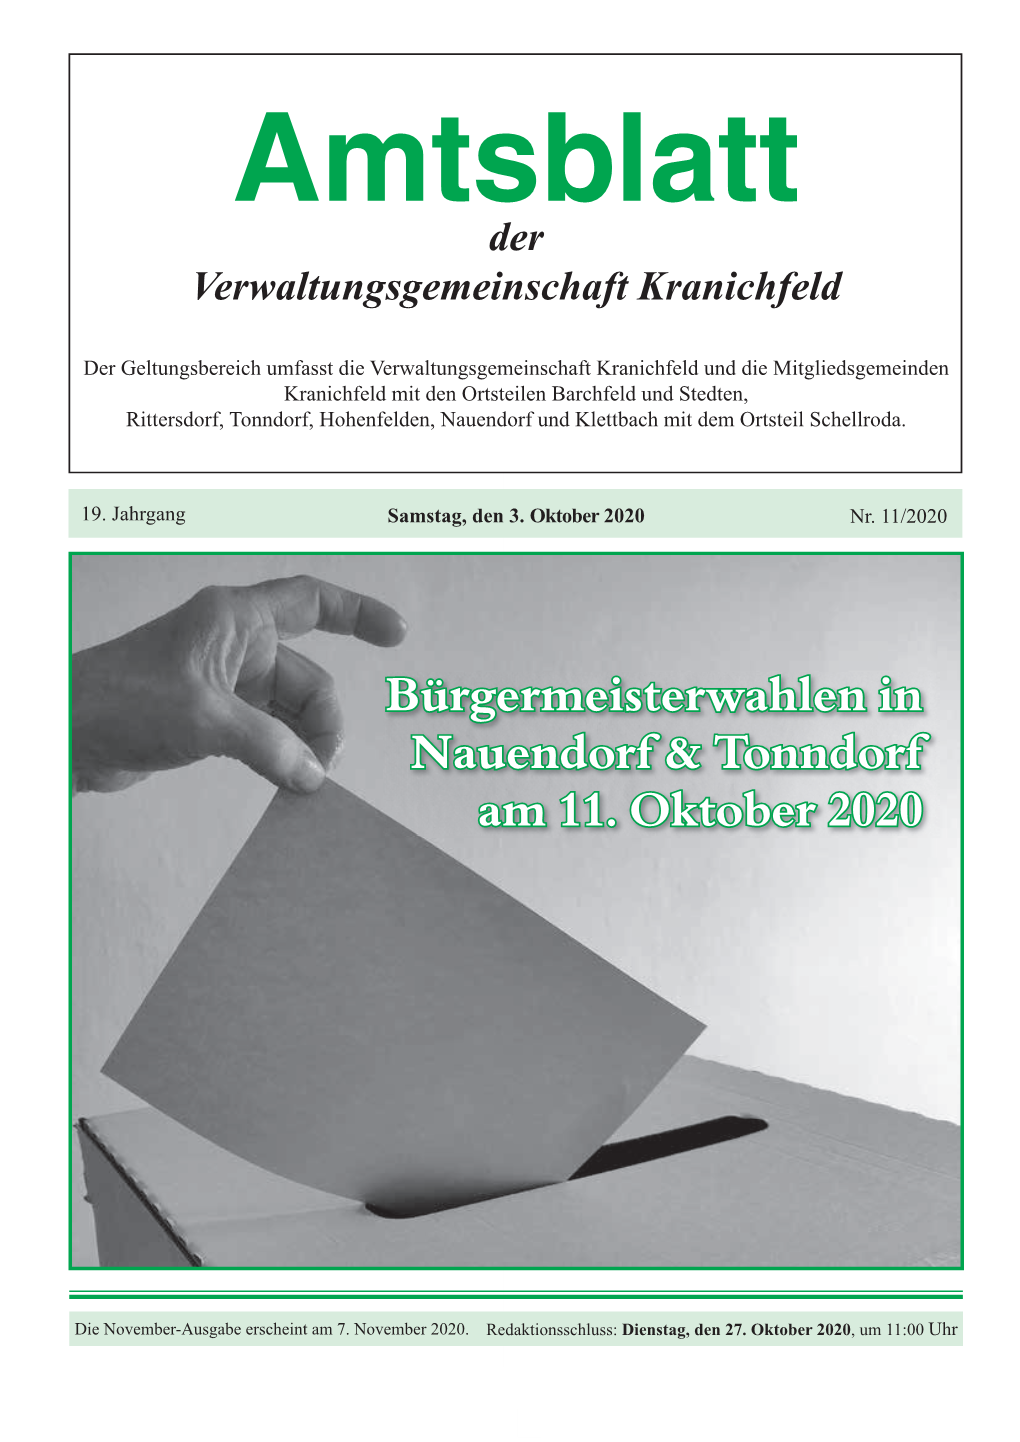 Bürgermeisterwahlen in Nauendorf & Tonndorf Am 11. Oktober 2020